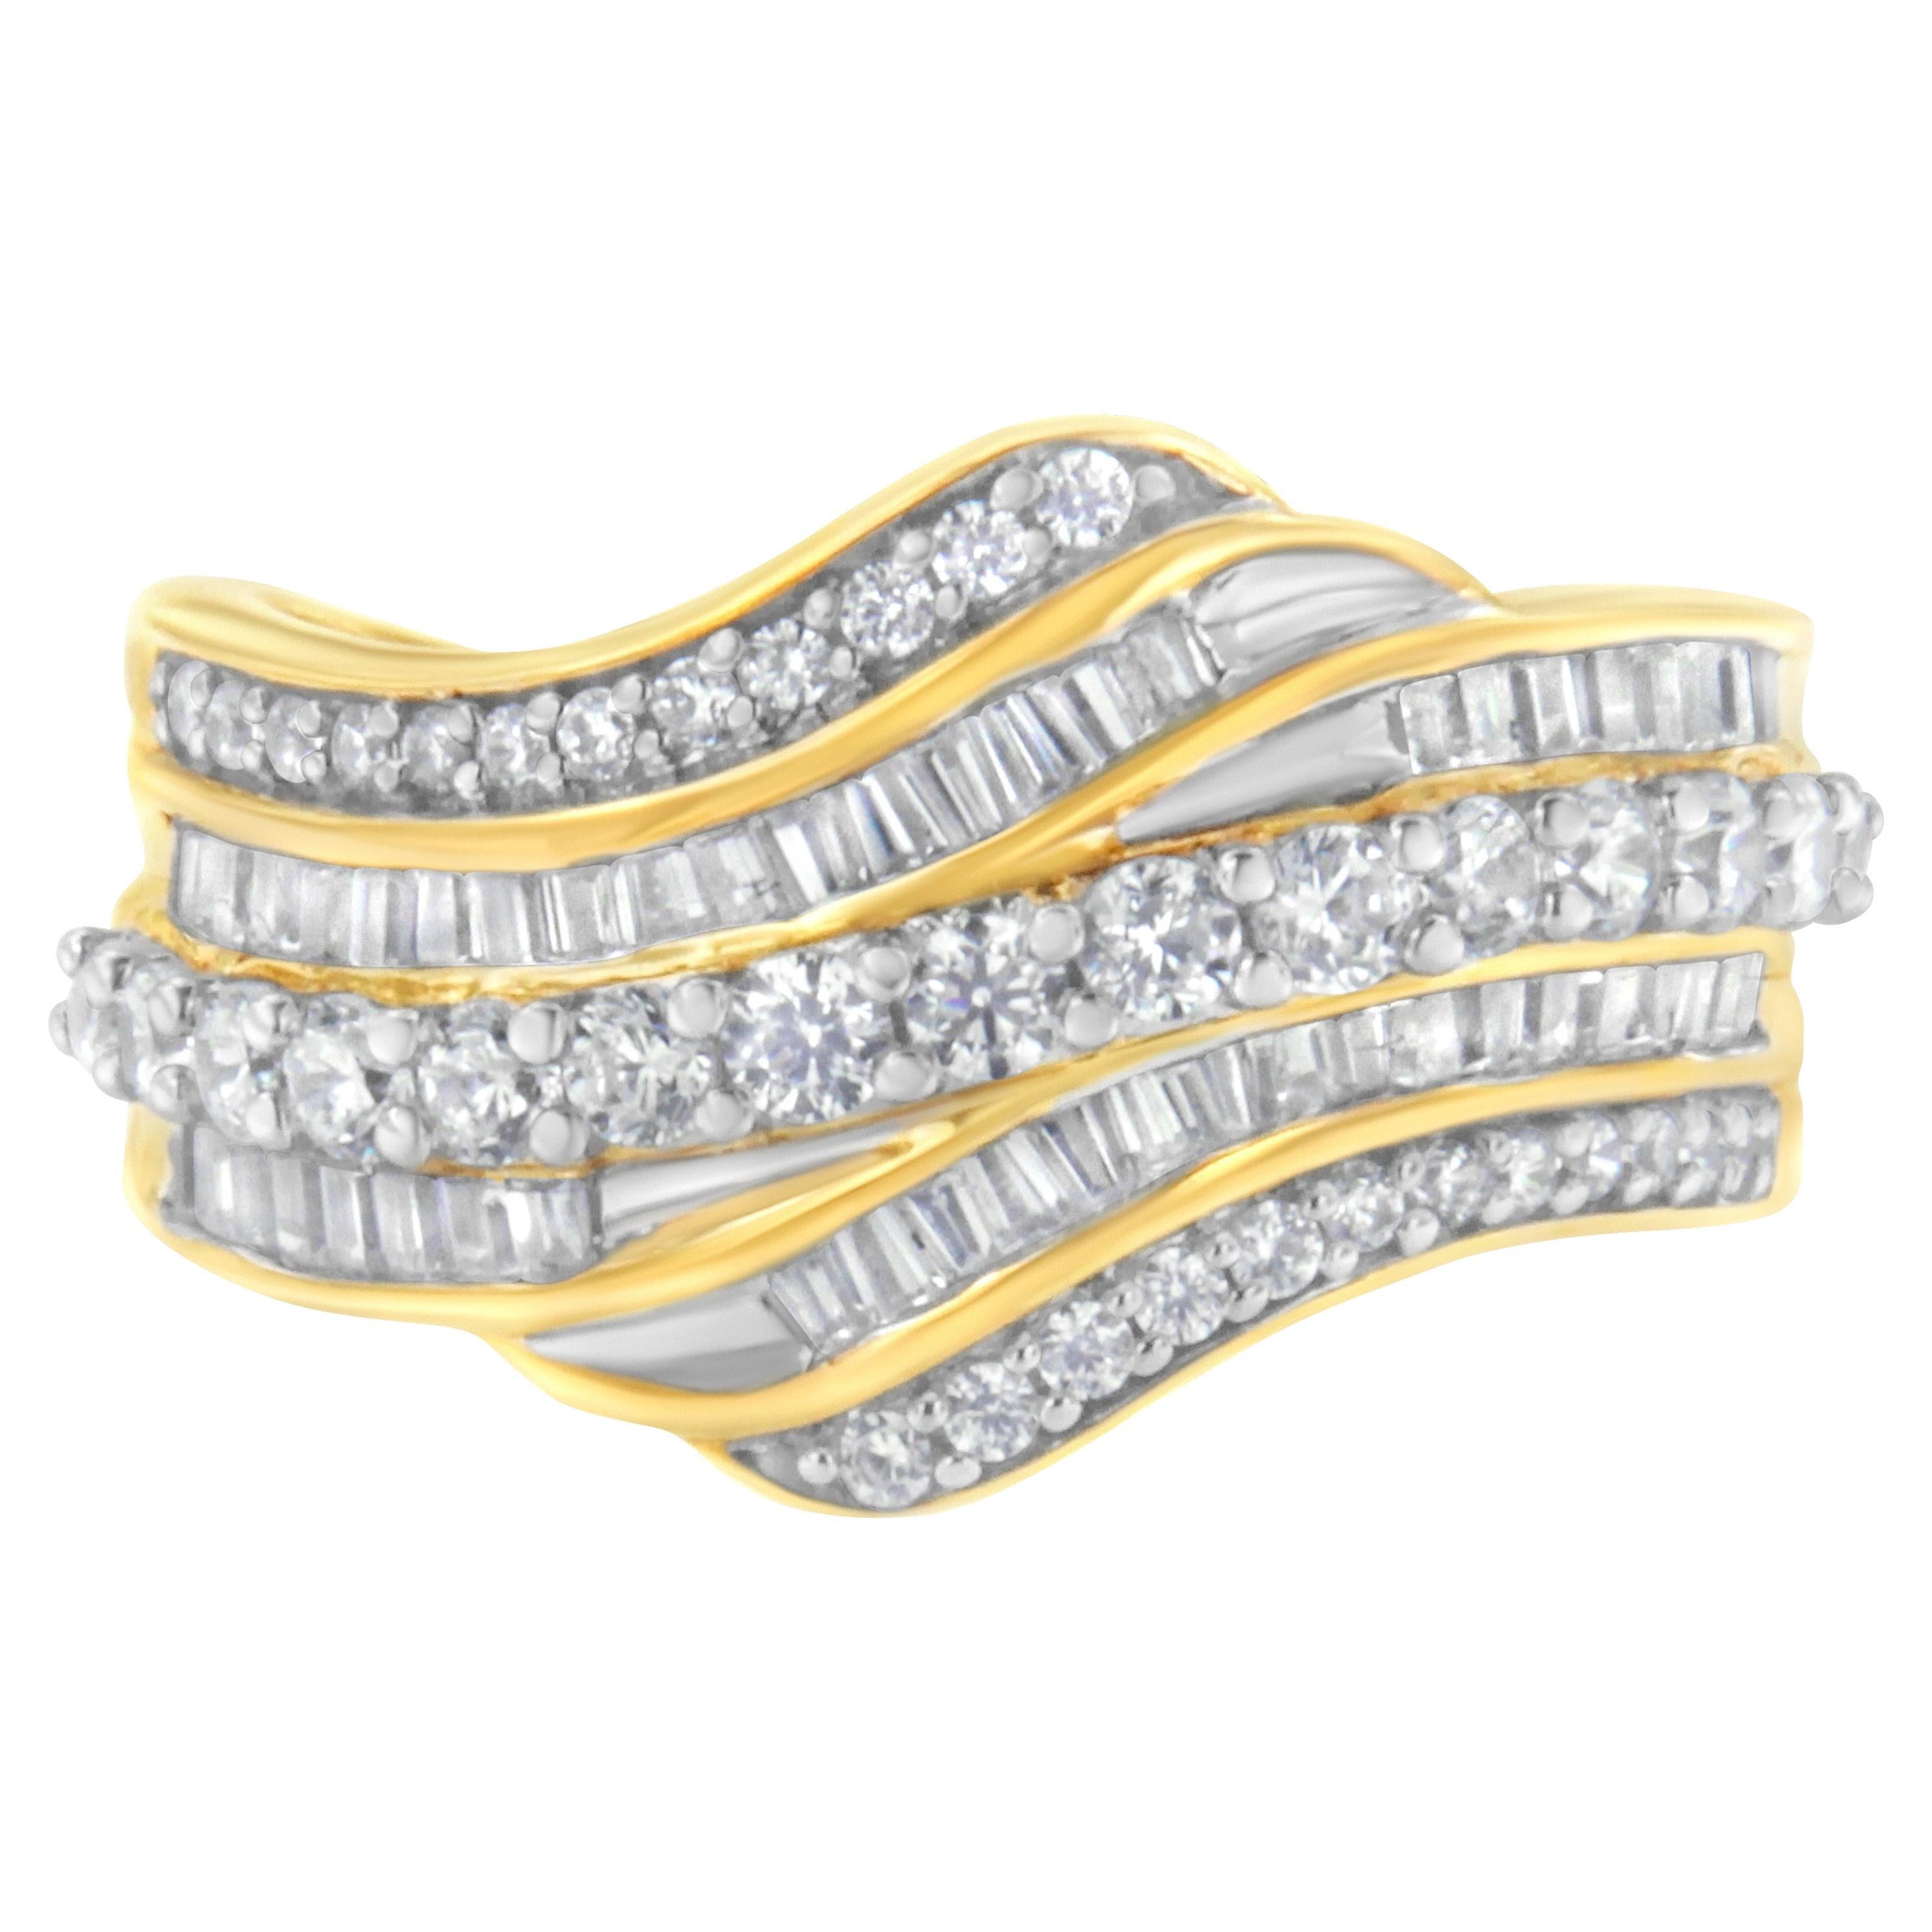 Bague bypass à plusieurs rangs en or jaune 10 carats avec diamants baguettes et ronds de 1,0 carat